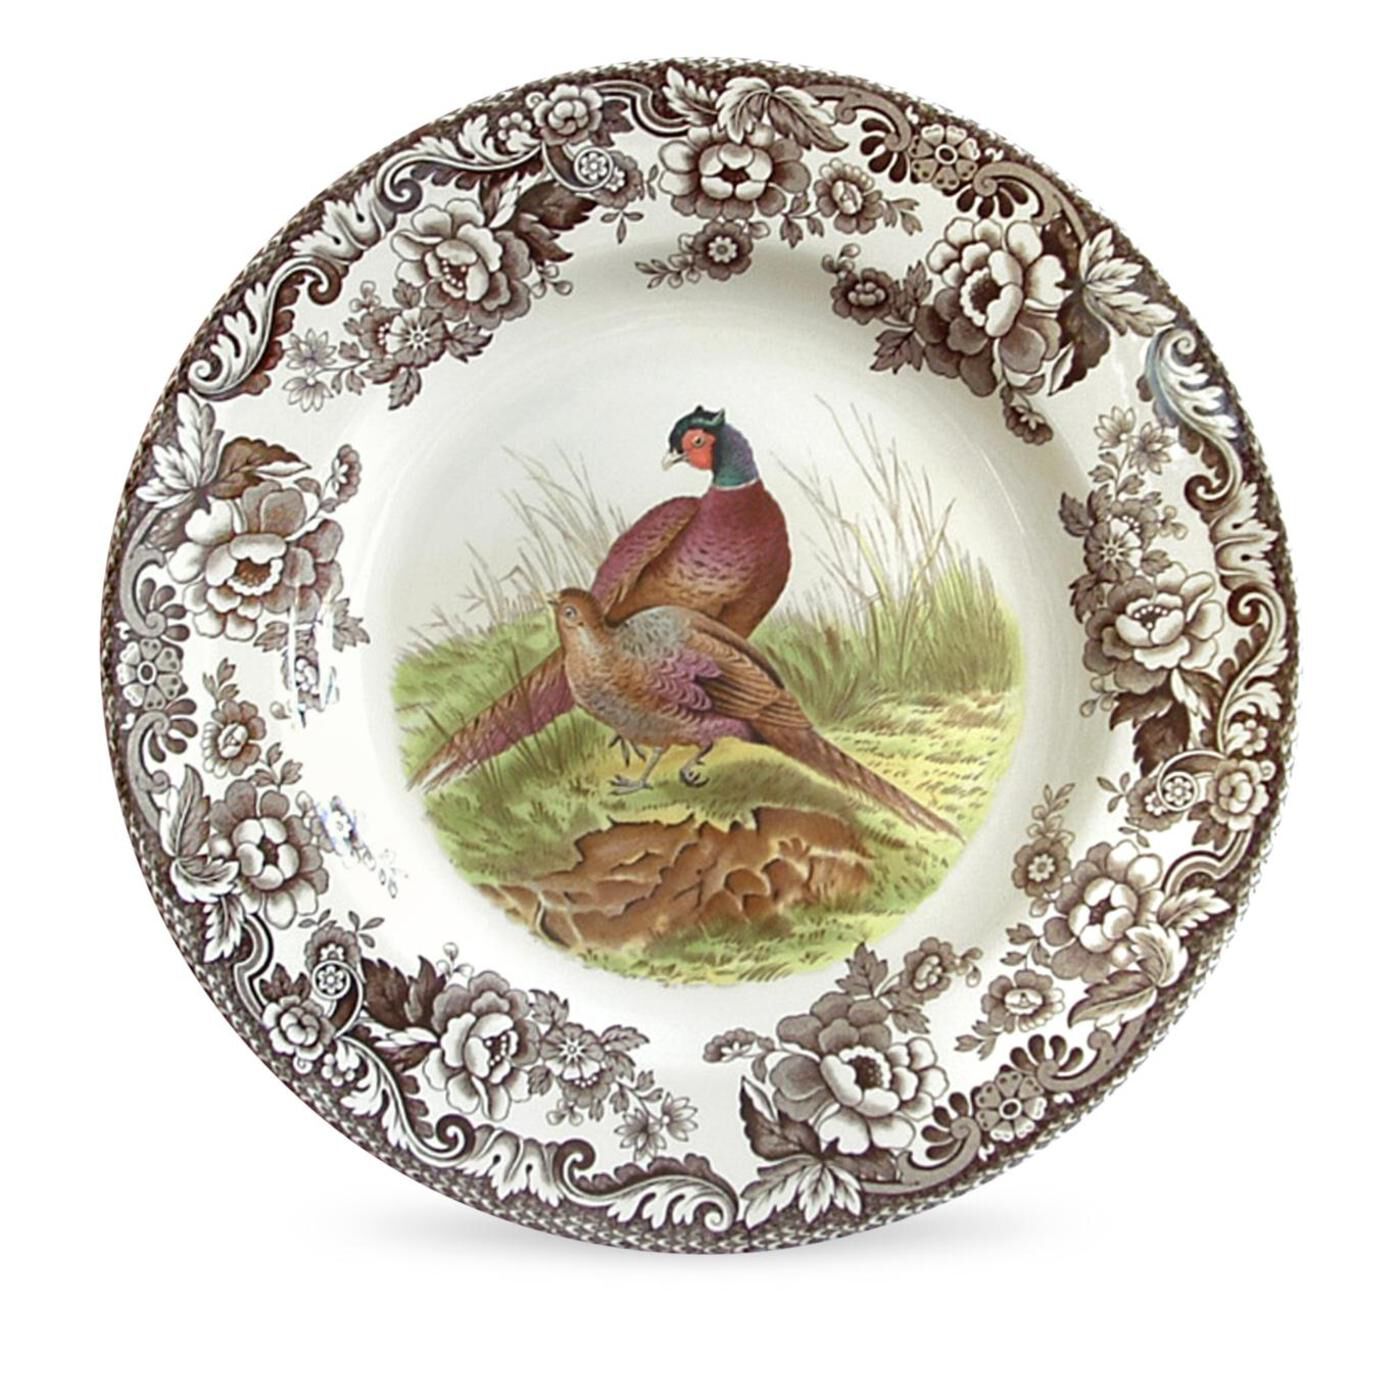 Spode Woodland Nut Bowl with Pheasant Portmeirion USA 1536425